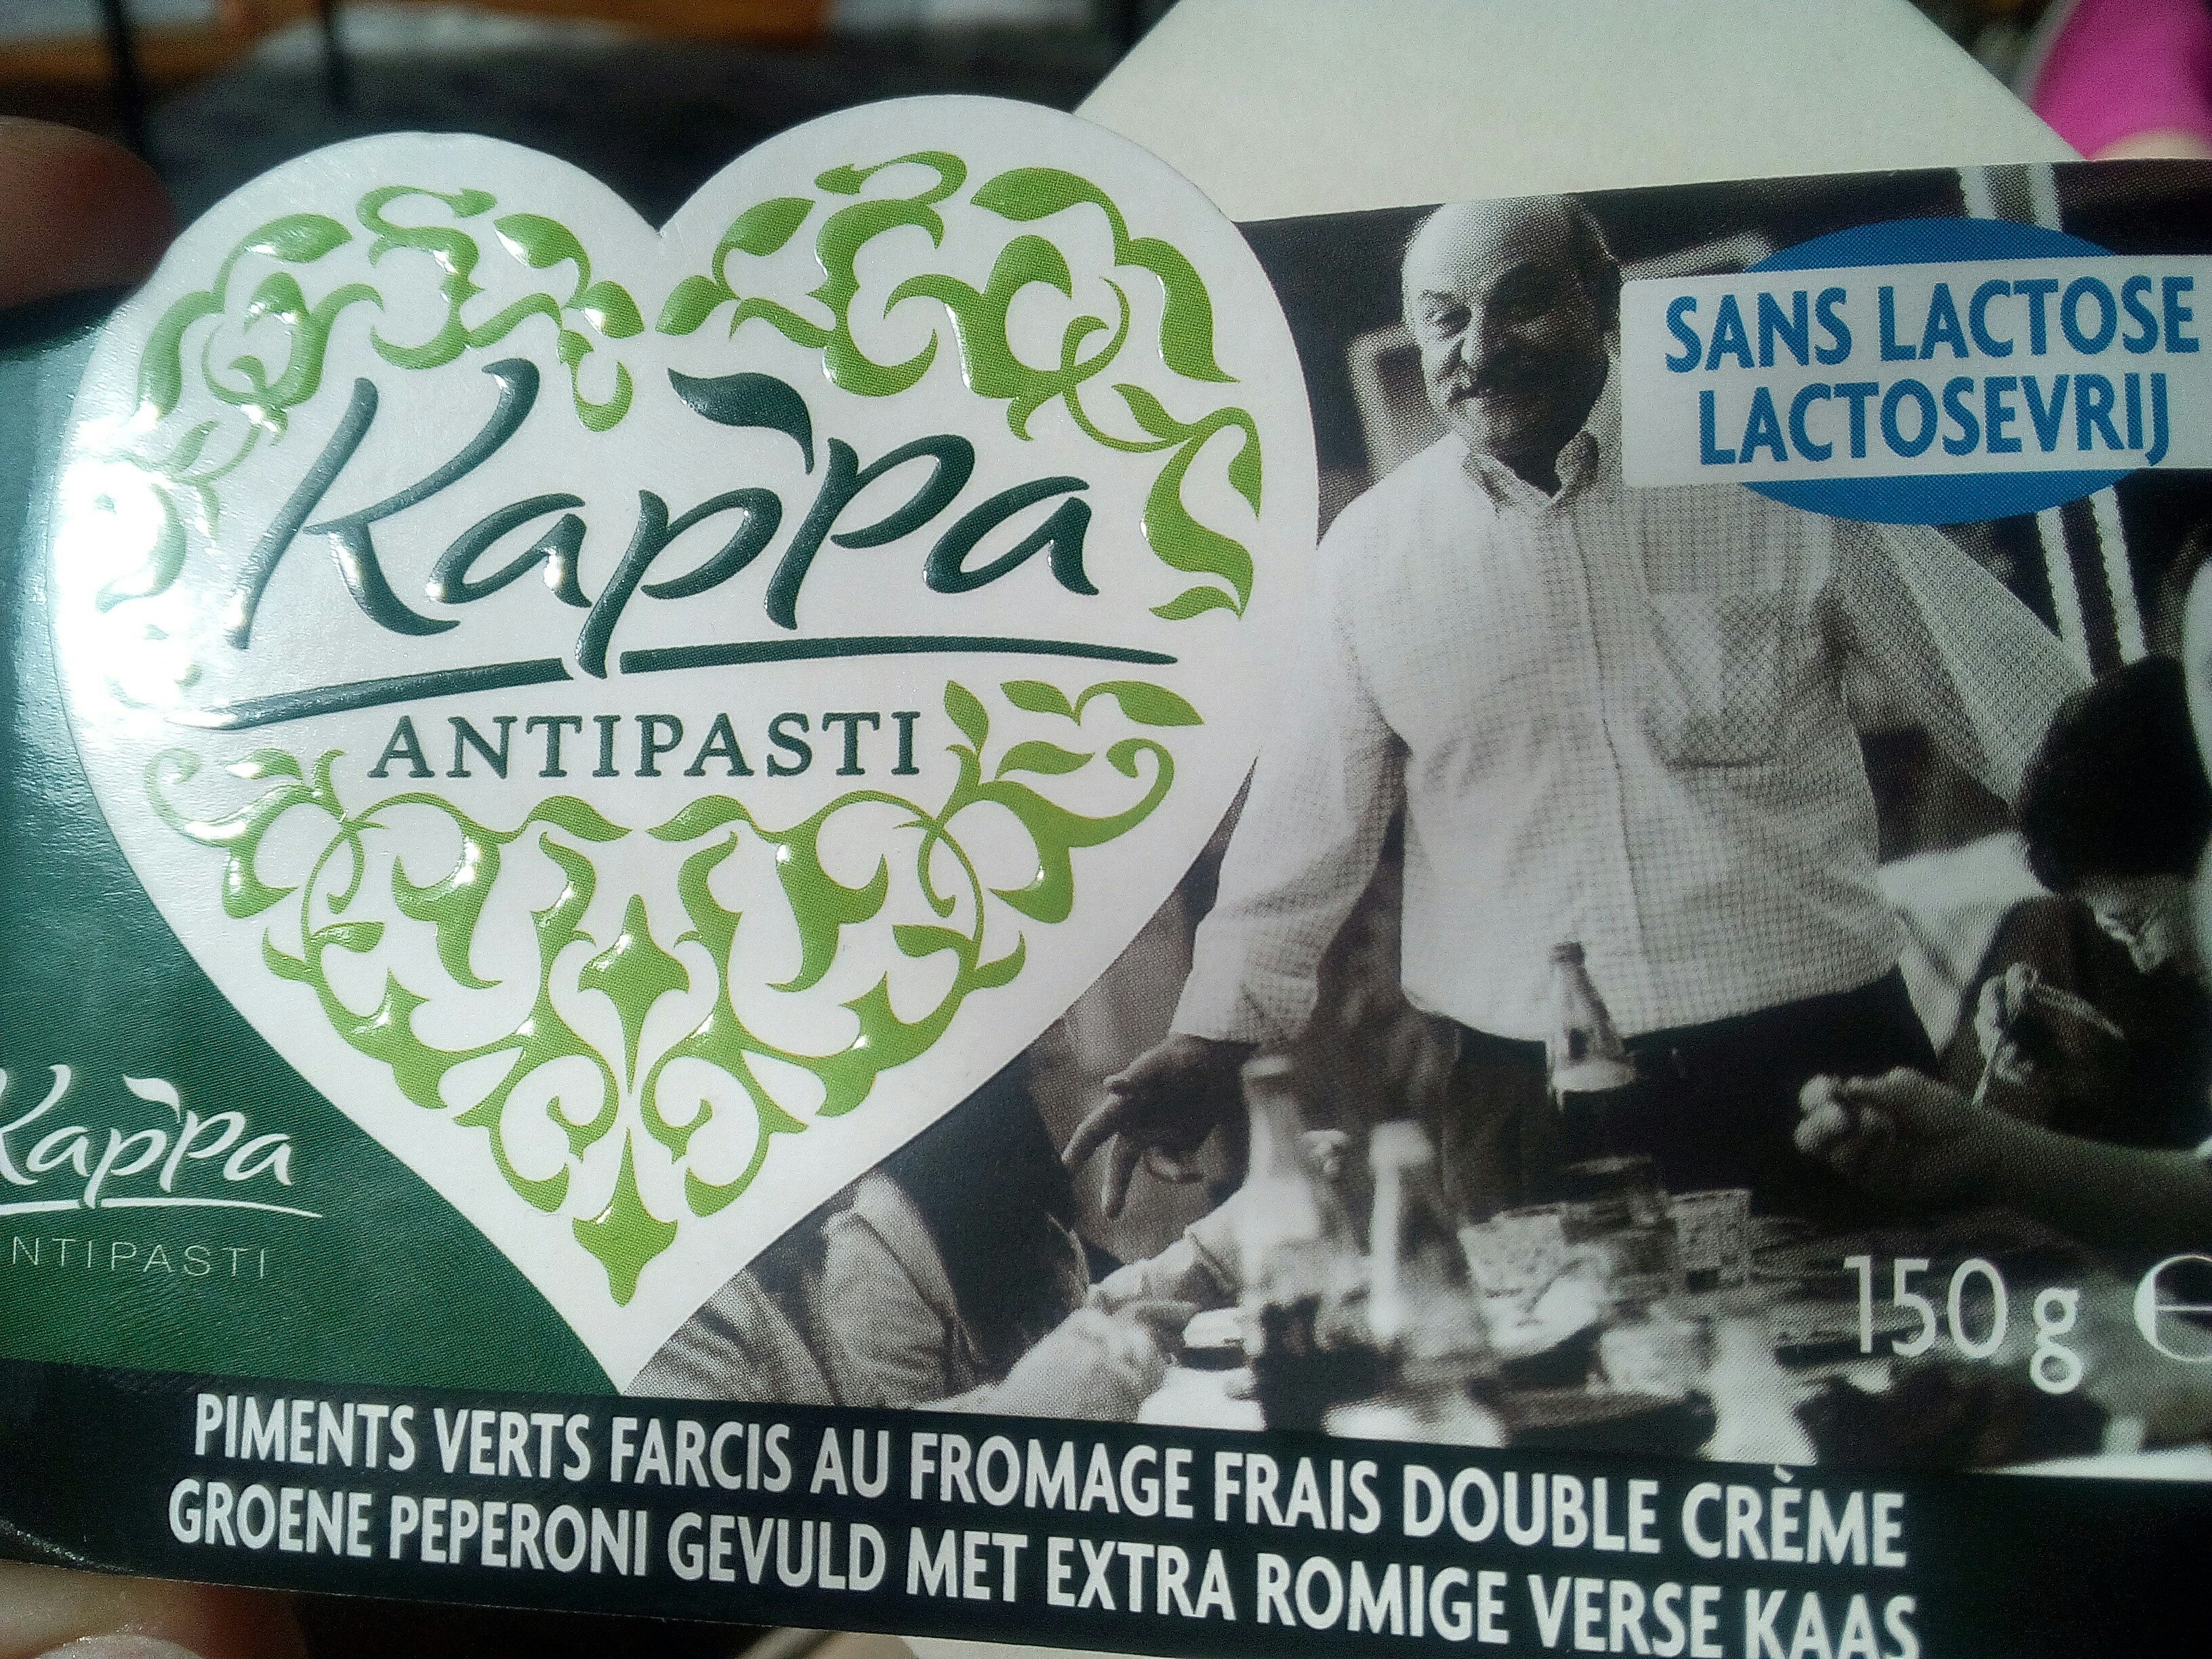 Kappa antipasti Piments verts farcis au fromage frais double crème - Produit